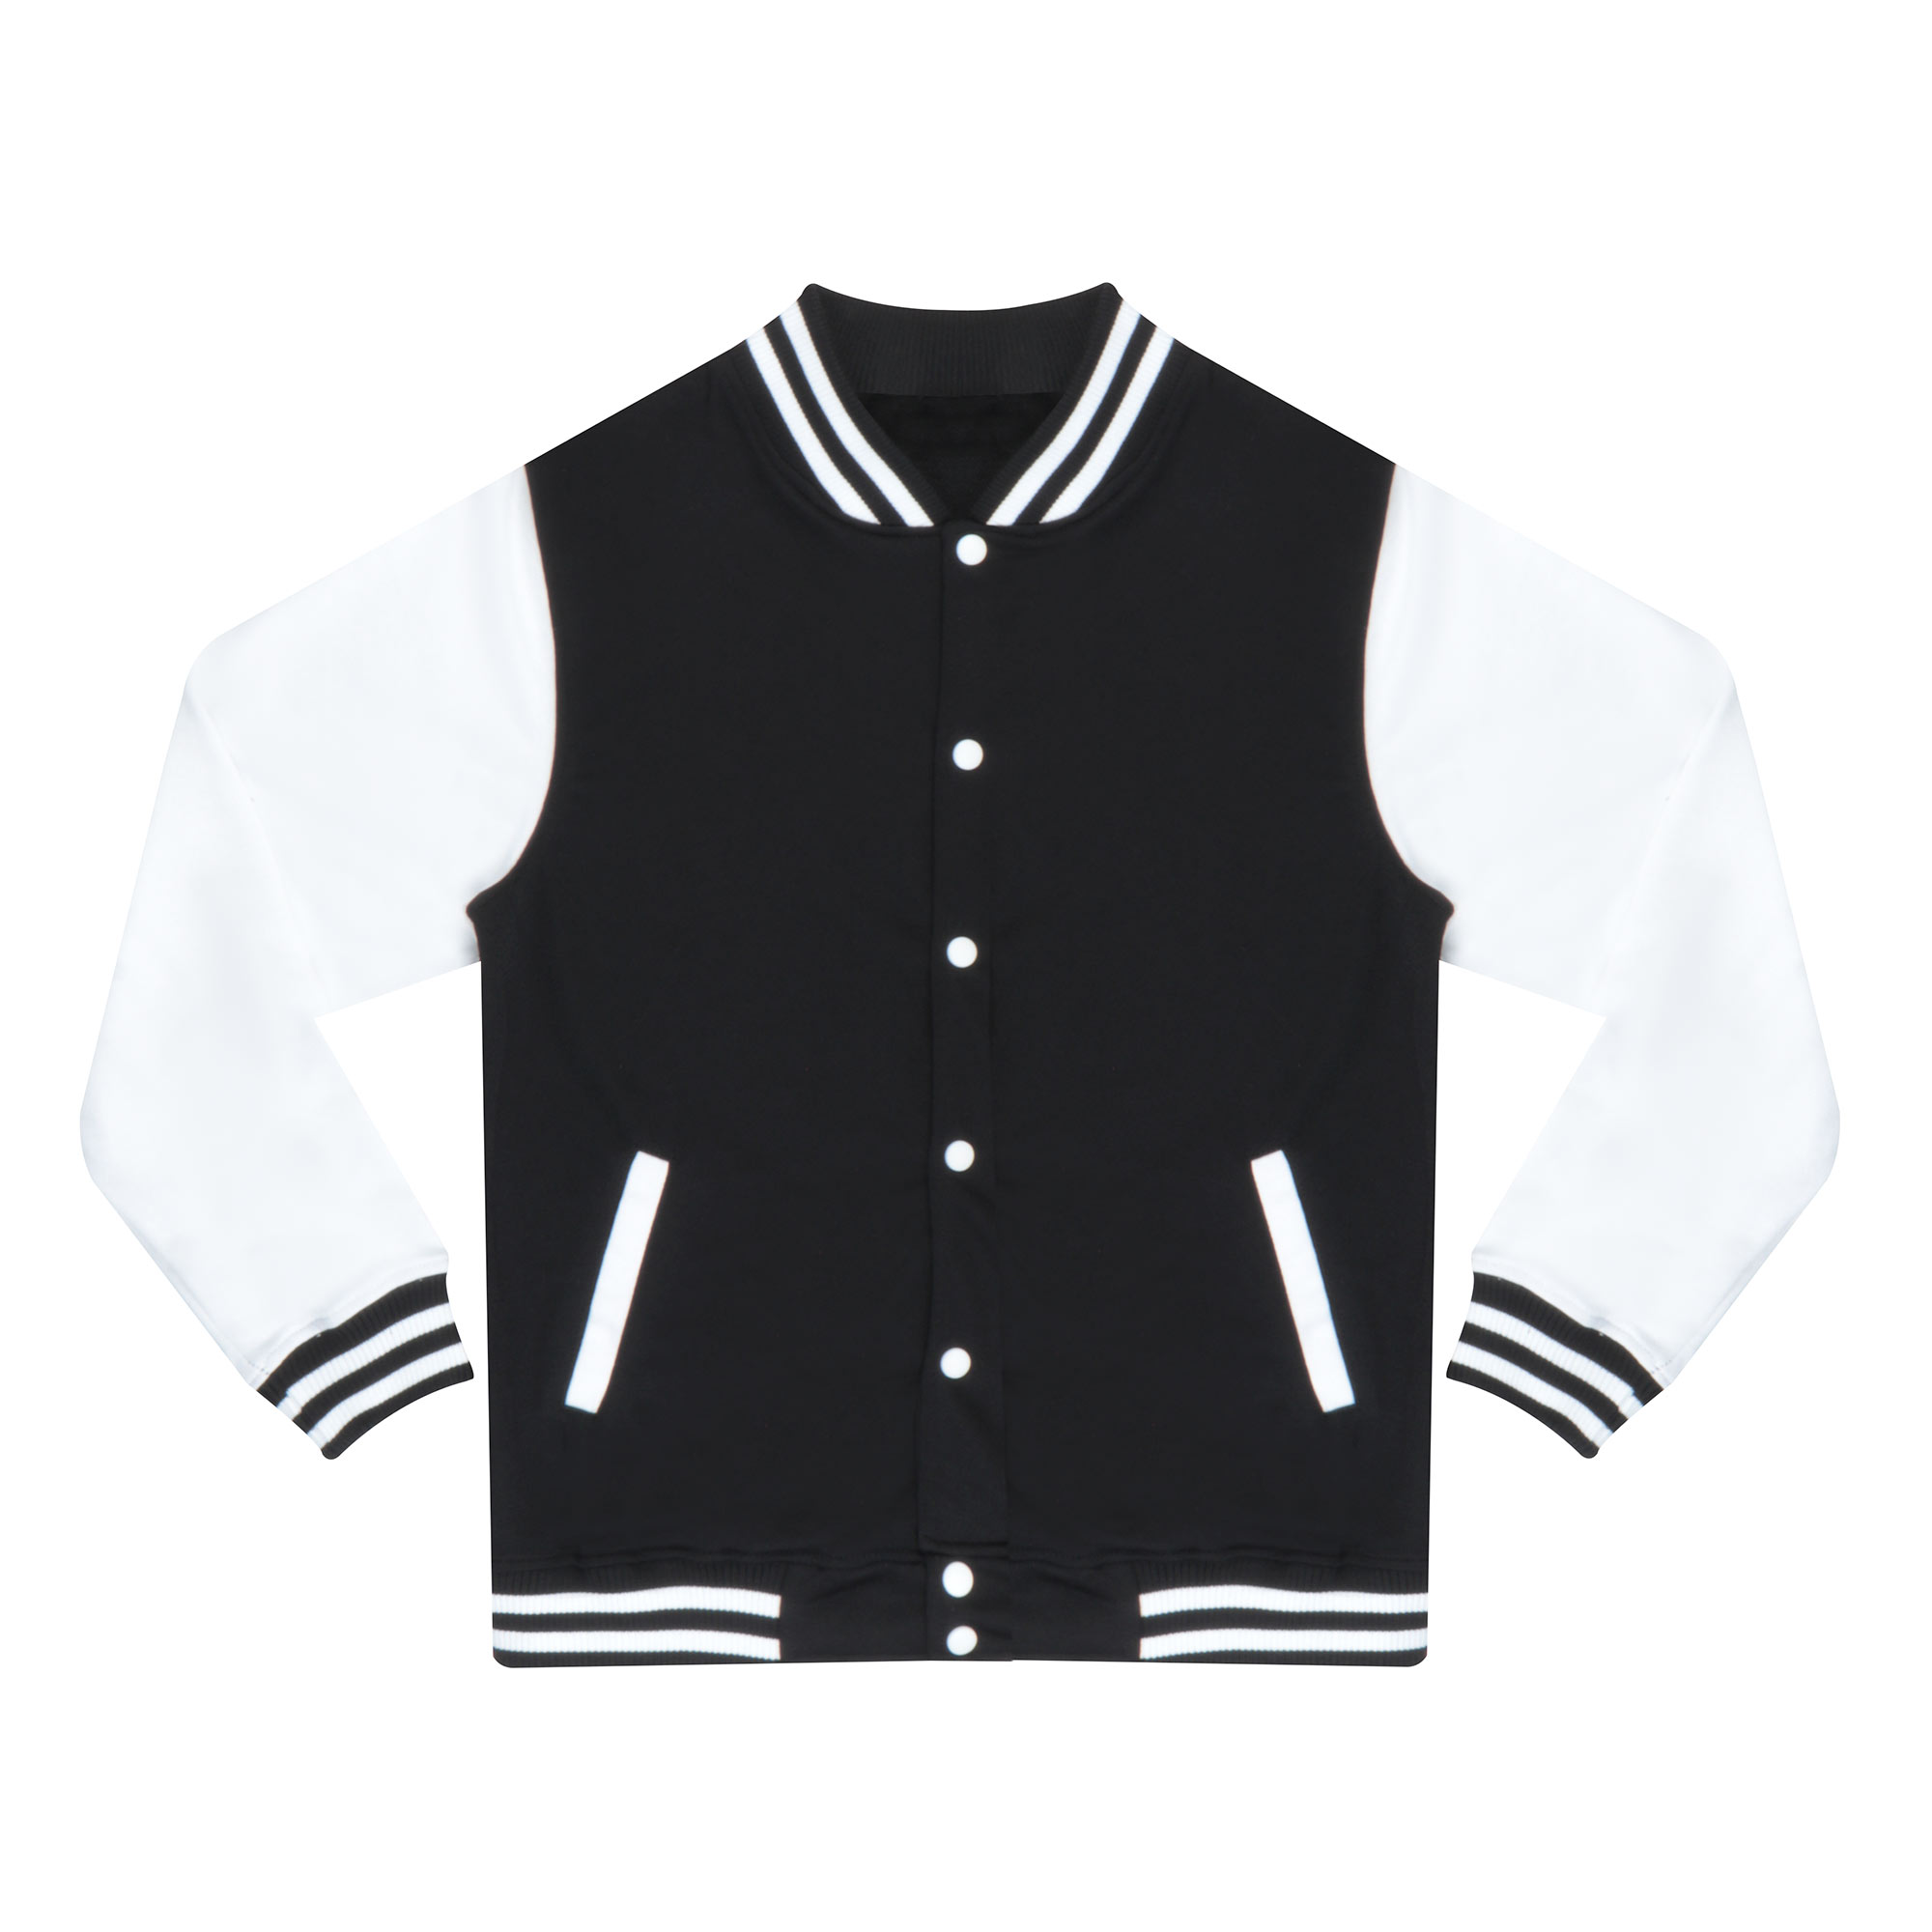 Бомбер Garment чёрный/белый XL полиэстер, цвет черный, размер XL - фото 1